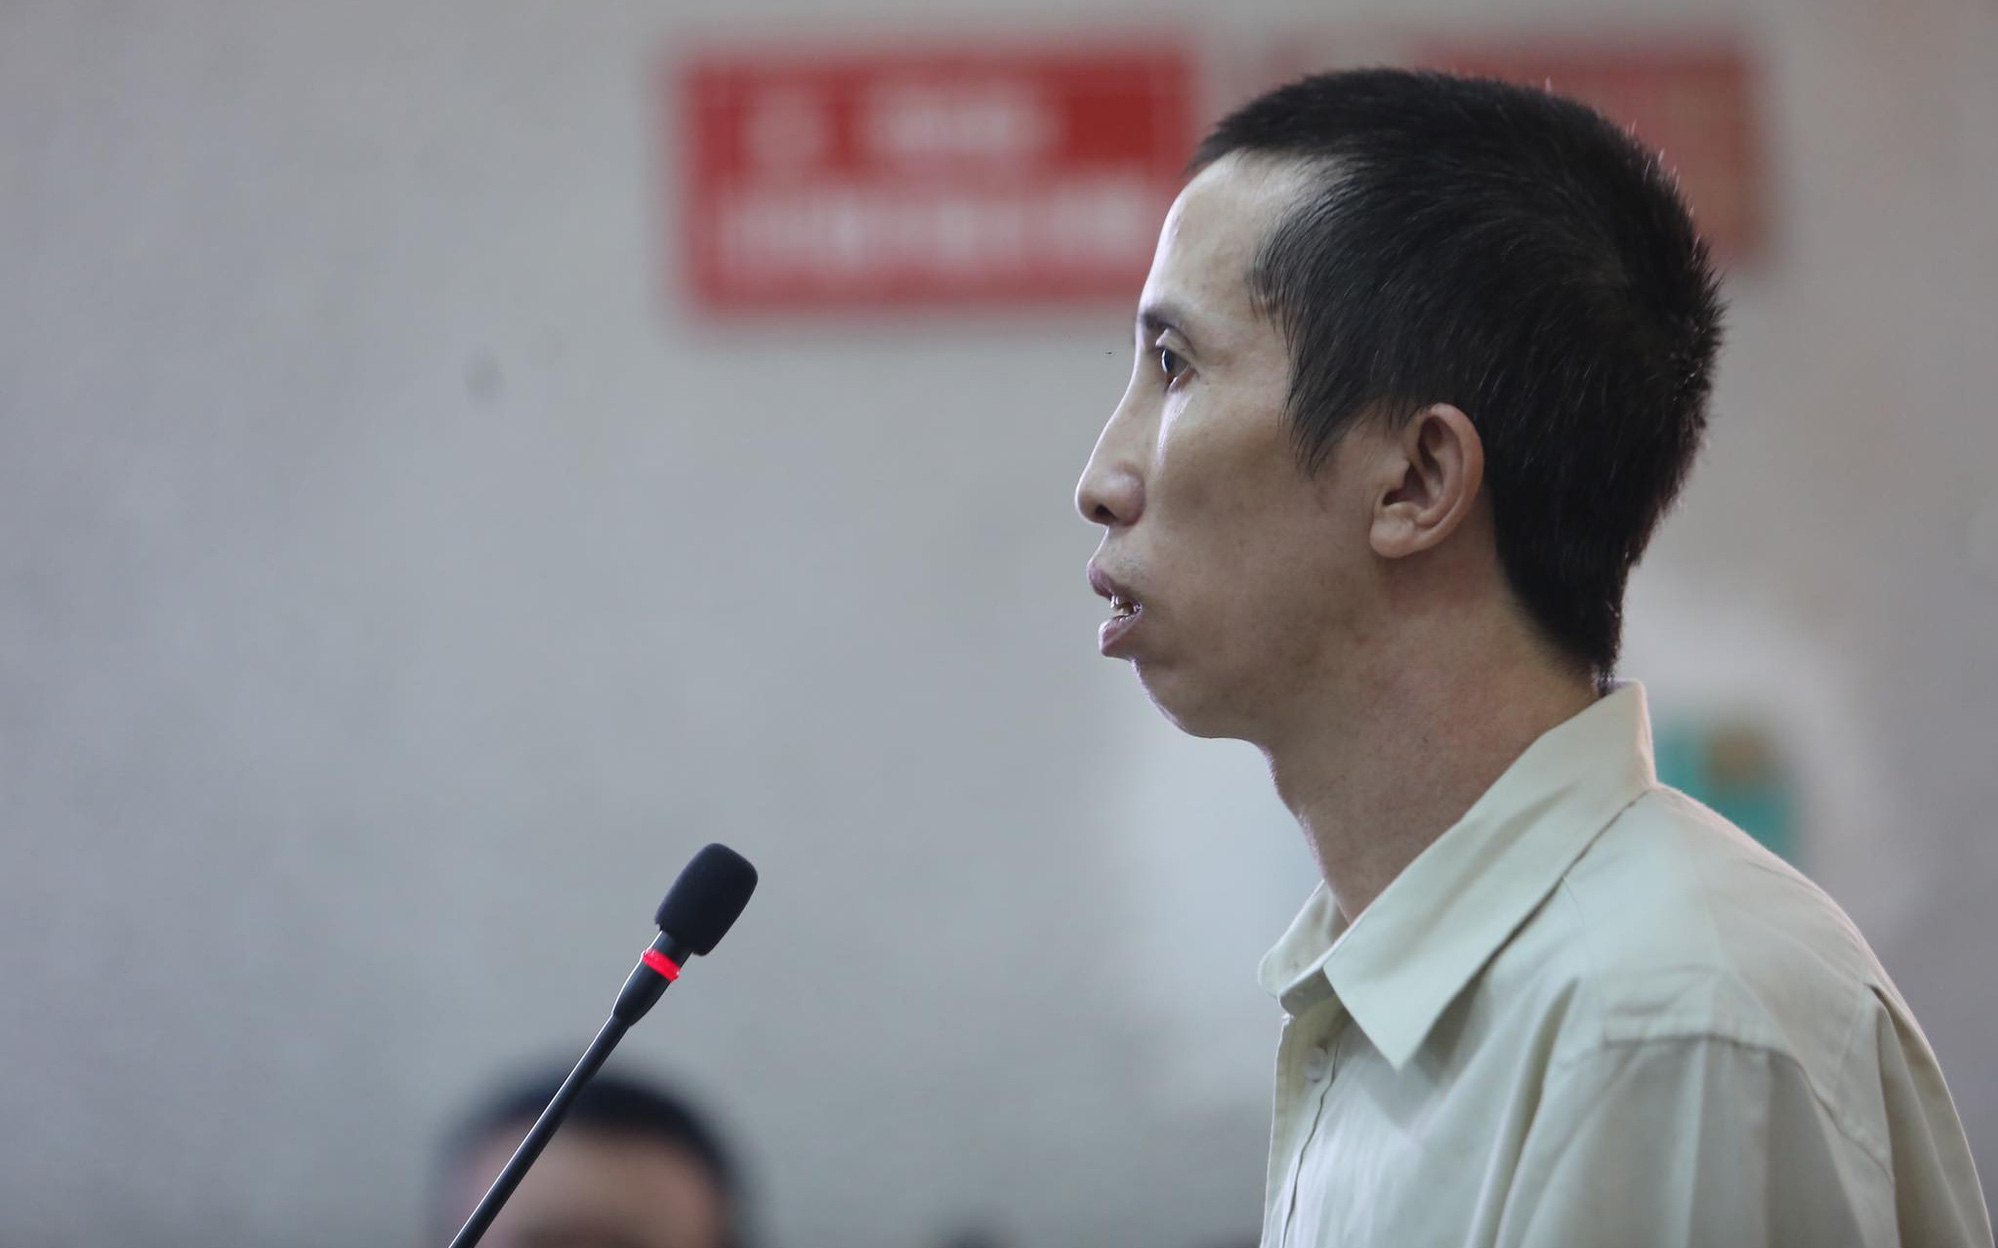 Xử phúc thẩm vụ nữ sinh giao gà, Bùi Văn Công nói to "Không phải kháng cáo gì hết, đứa nào có tội thì tử hình luôn"